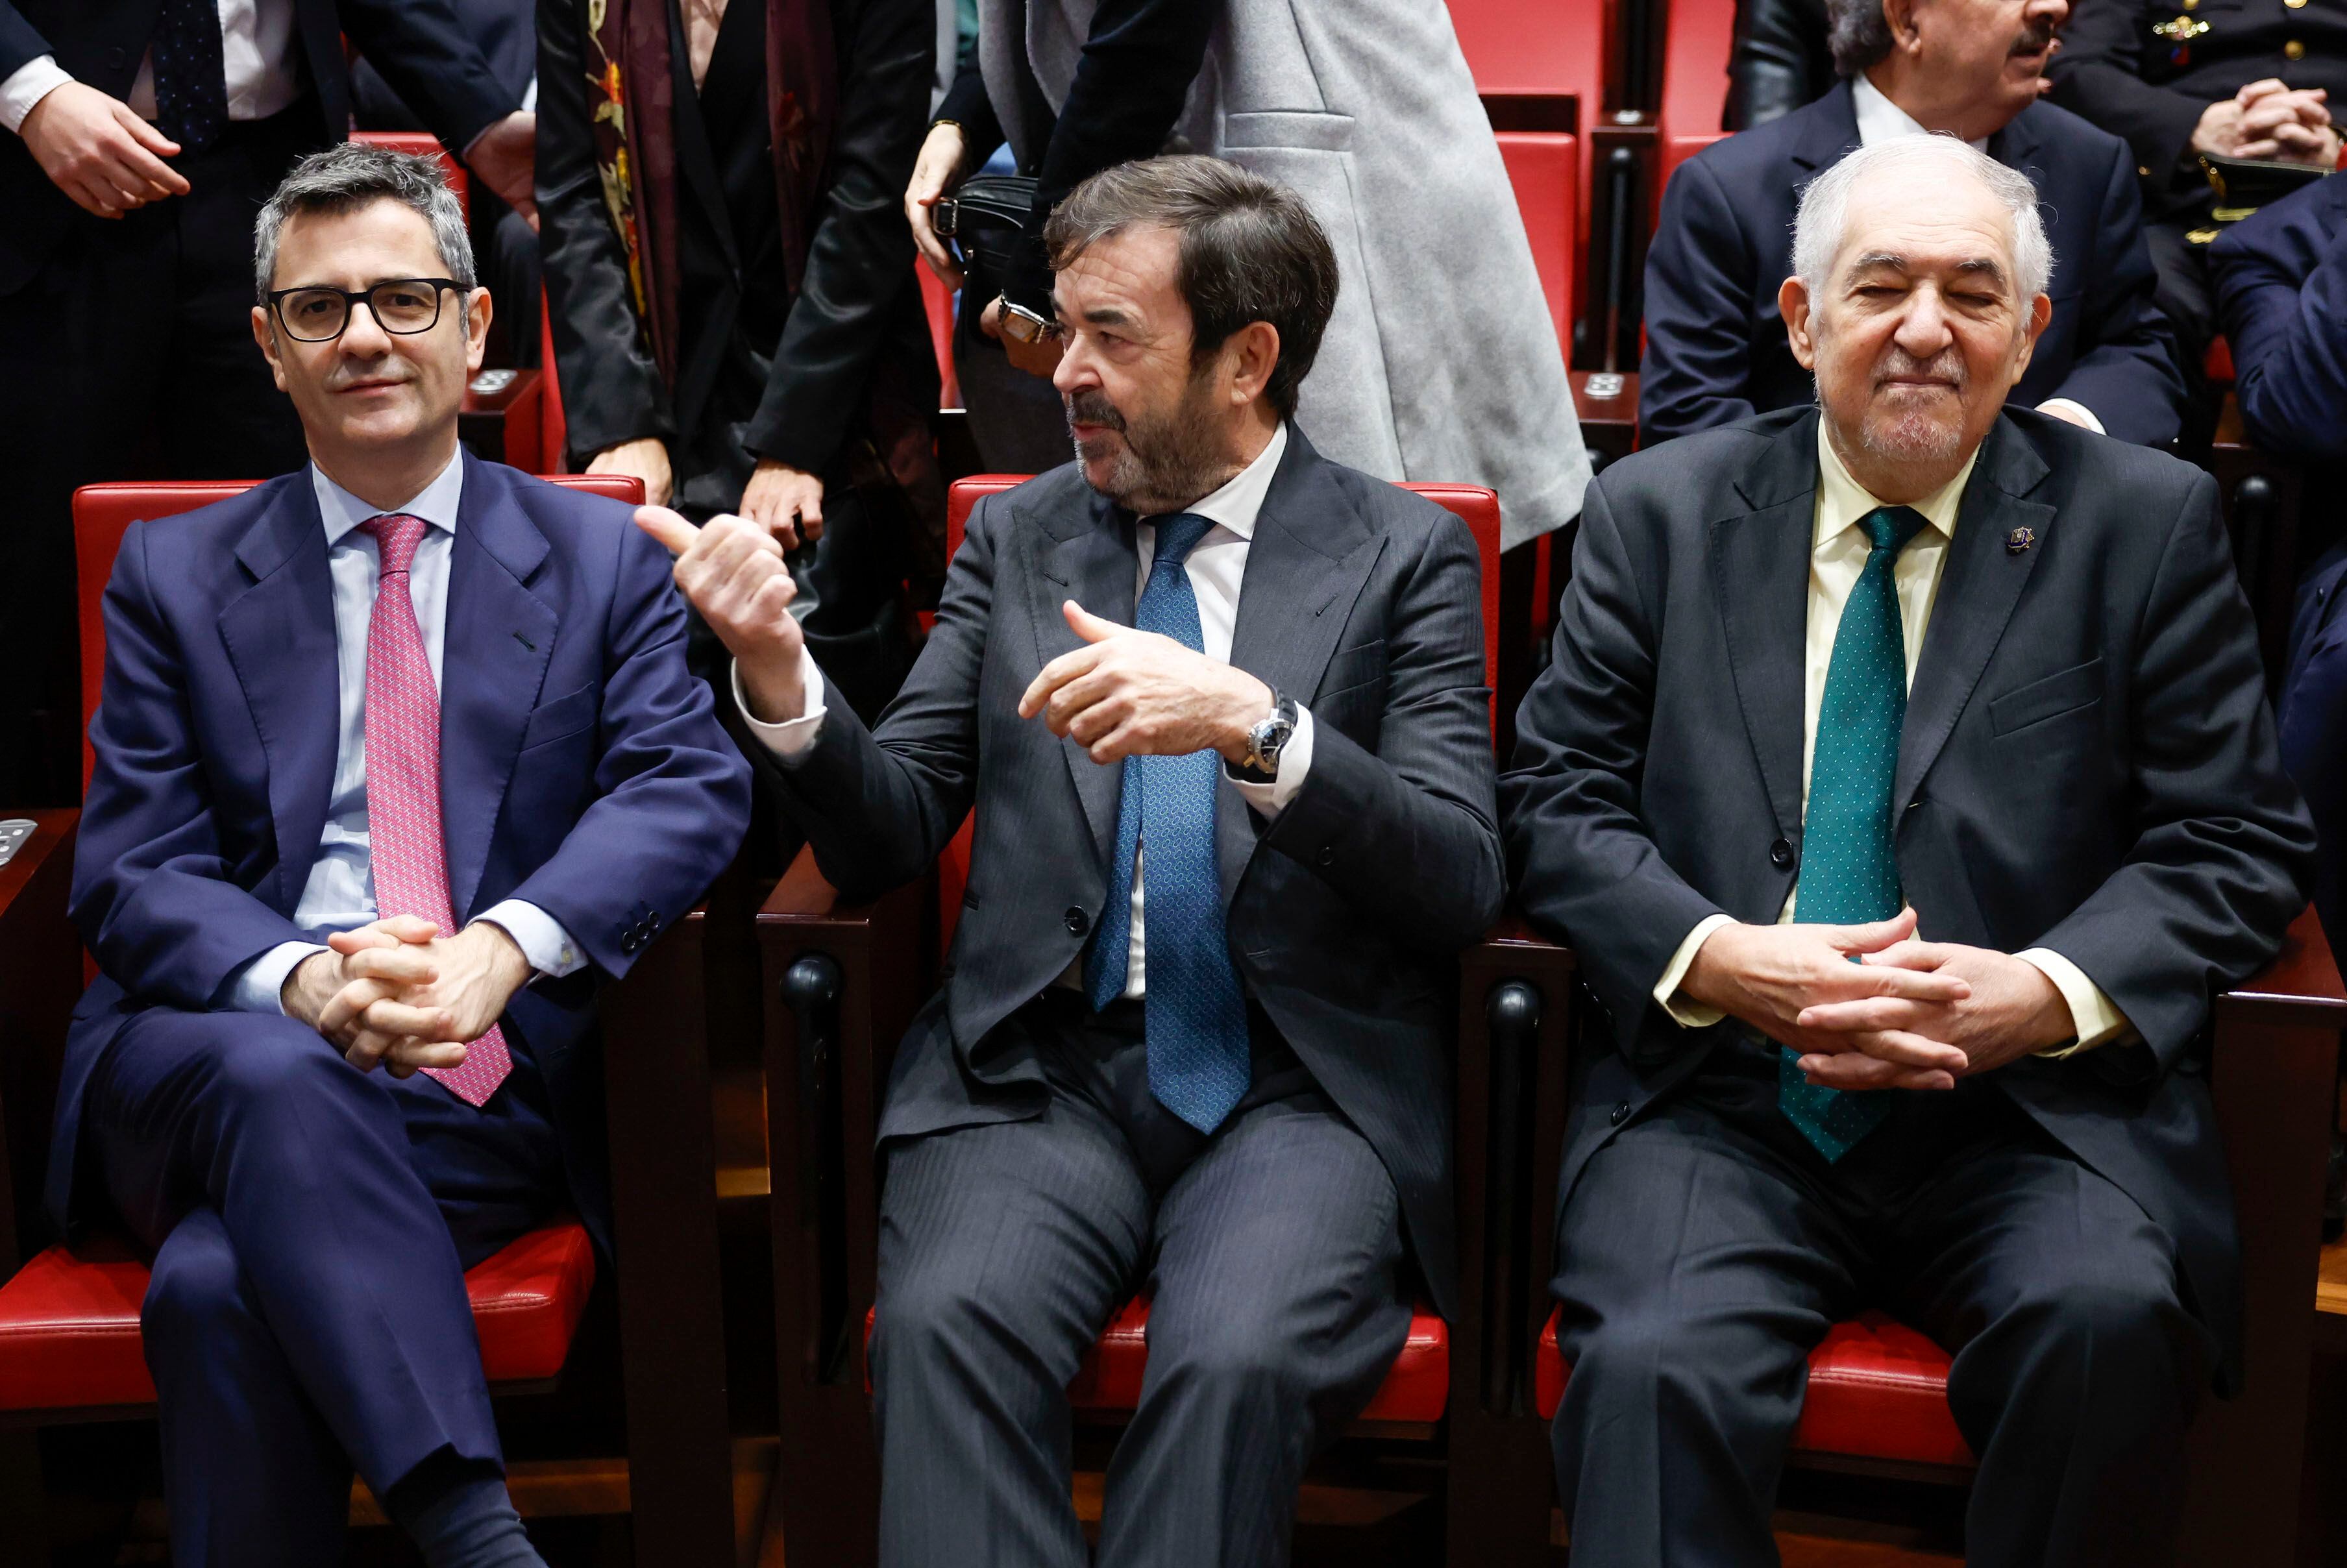 Desde la izquierda, el ministro de Presidencia, Félix Bolaños; el presidente del Consejo General del Poder Judicial, Vicente Guilarte, y el presidente del Tribunal Constitucional, Cándido Conde-Pumpido, en un acto en Madrid el 15 de diciembre.